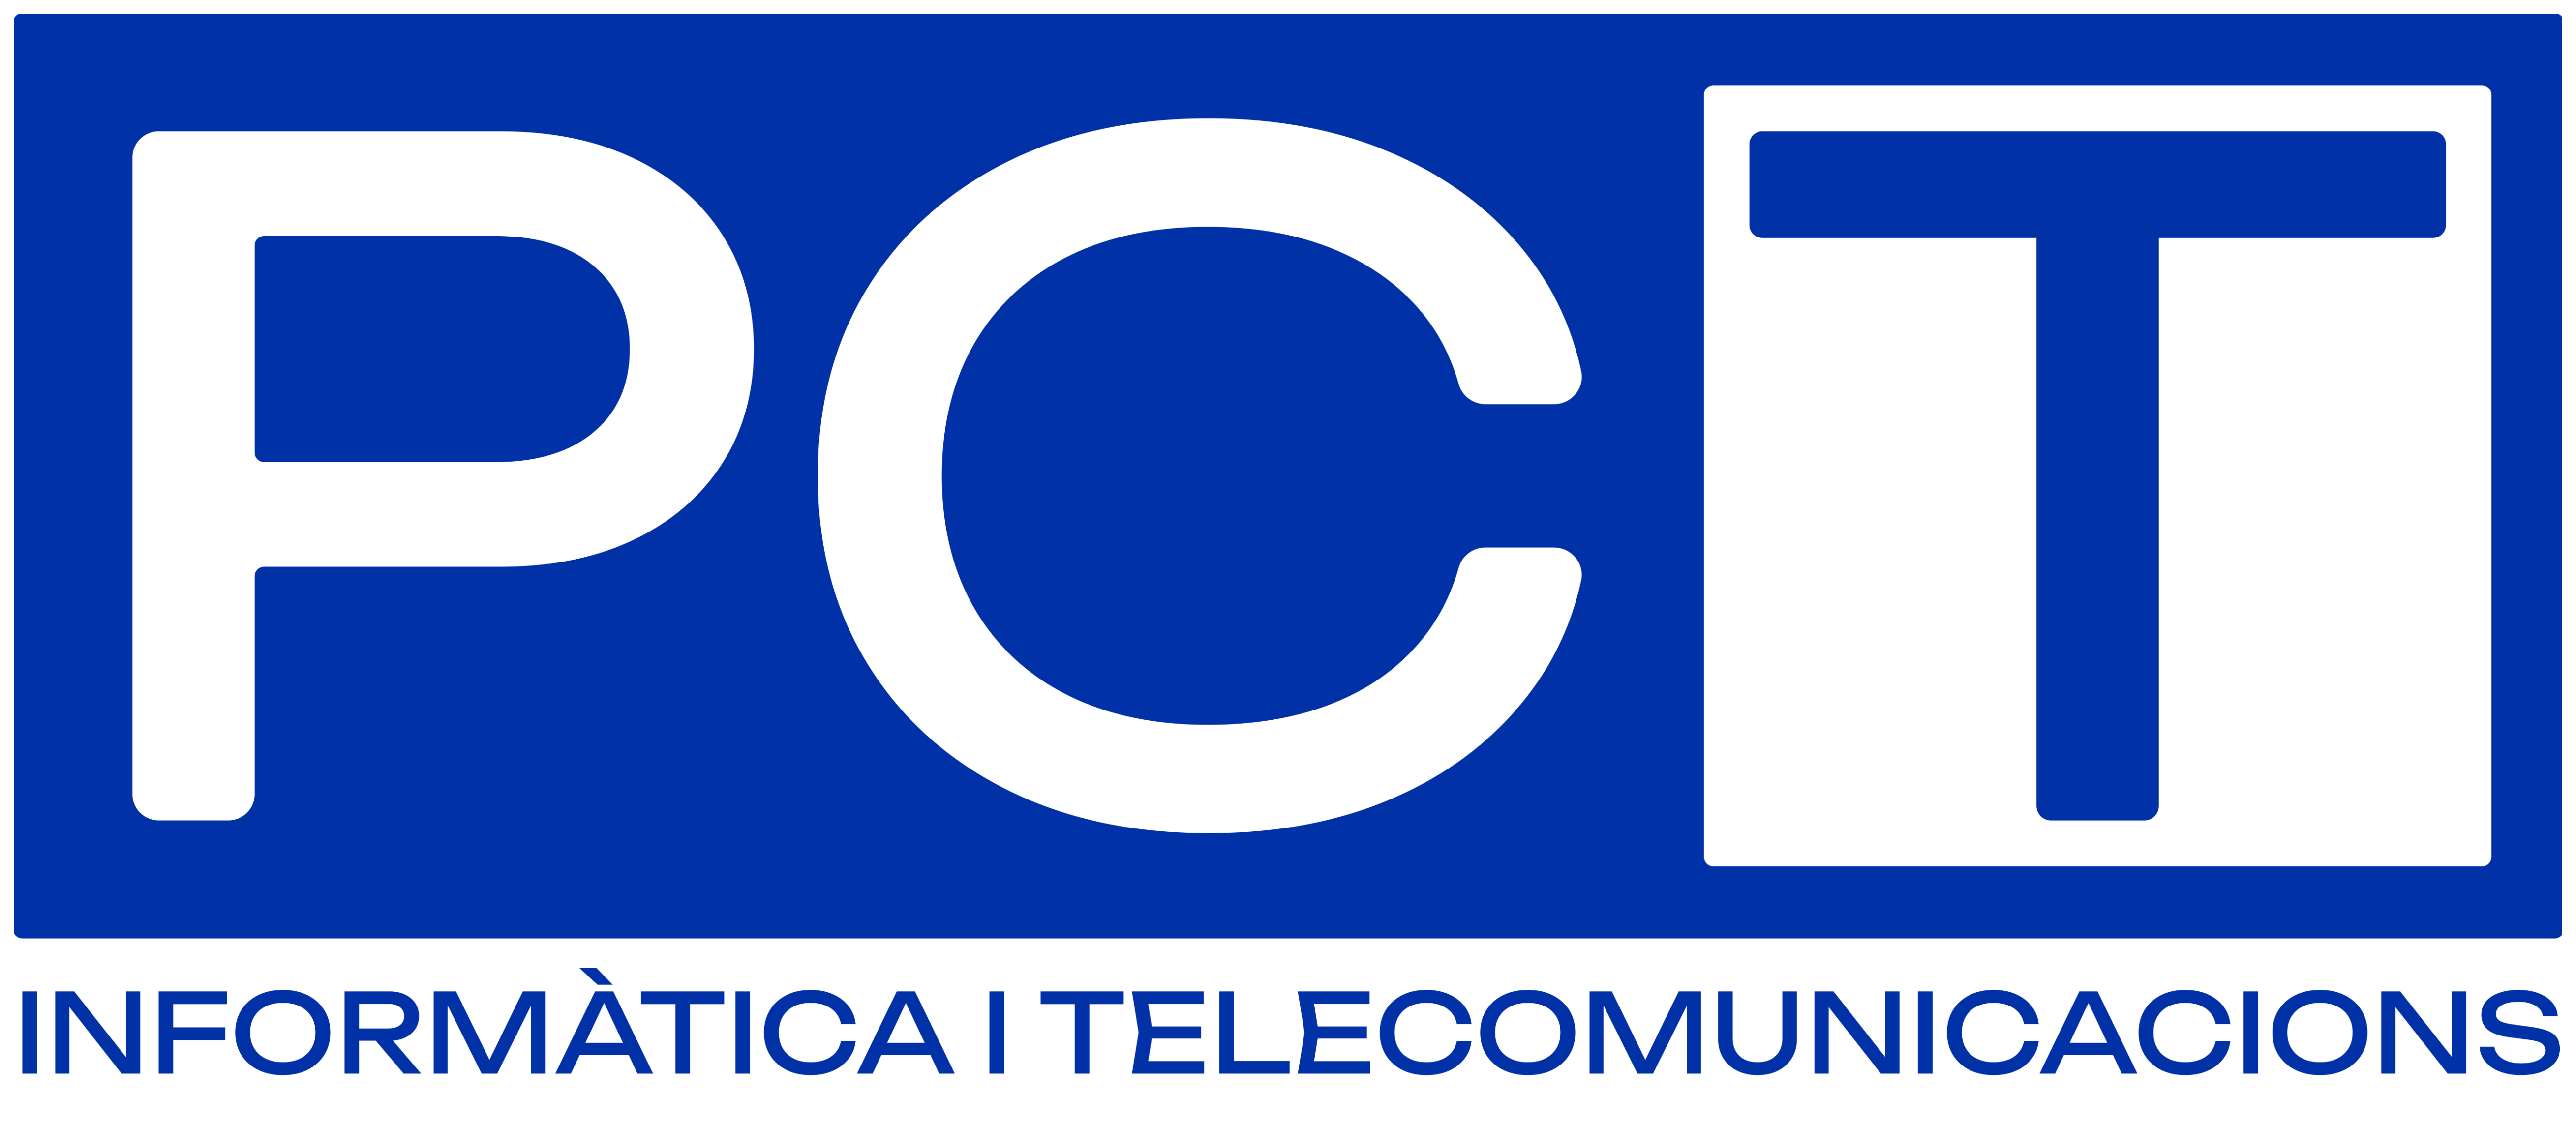 PC TELECOMUNICACIONS